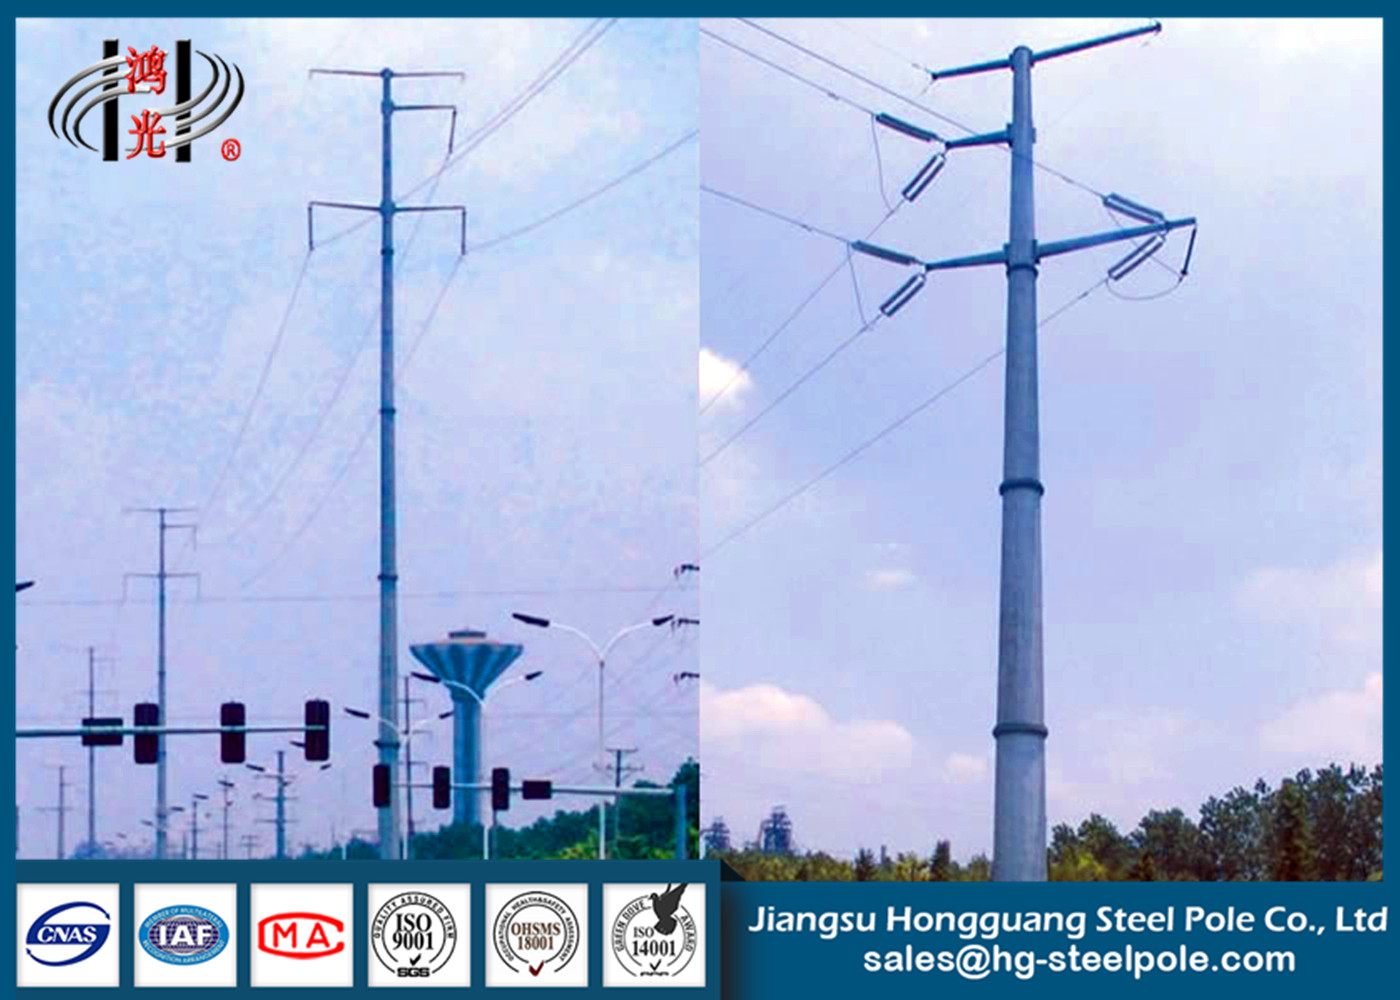 HDG poste de acero galvanizado poder poligonal para la industria eléctrica